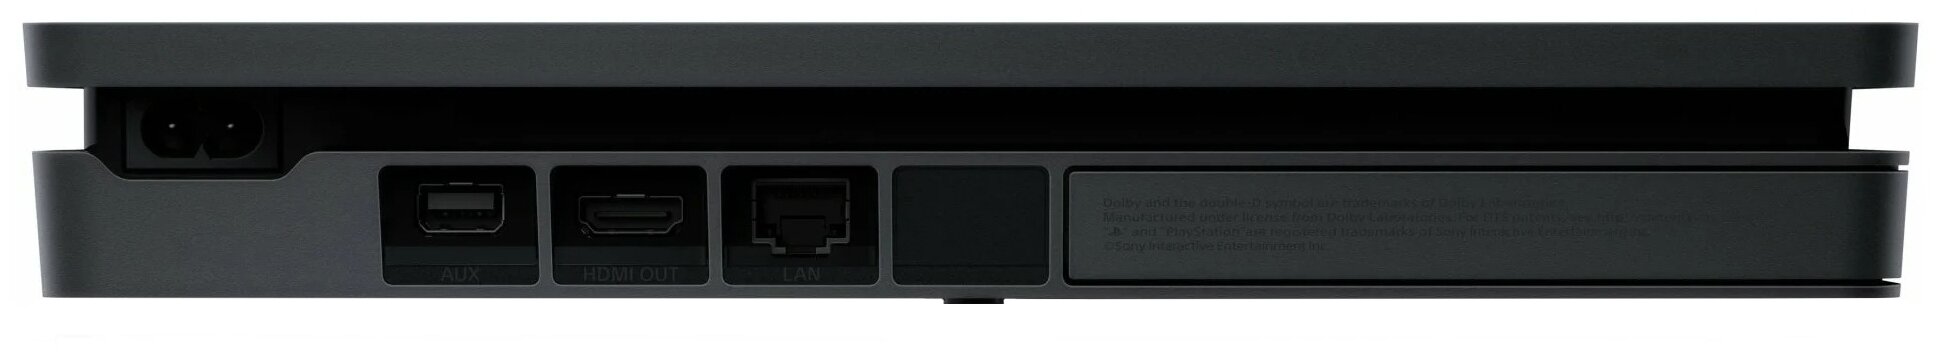 Игровая приставка Sony PlayStation 4 Slim 1000 ГБ HDD, без игр, черный